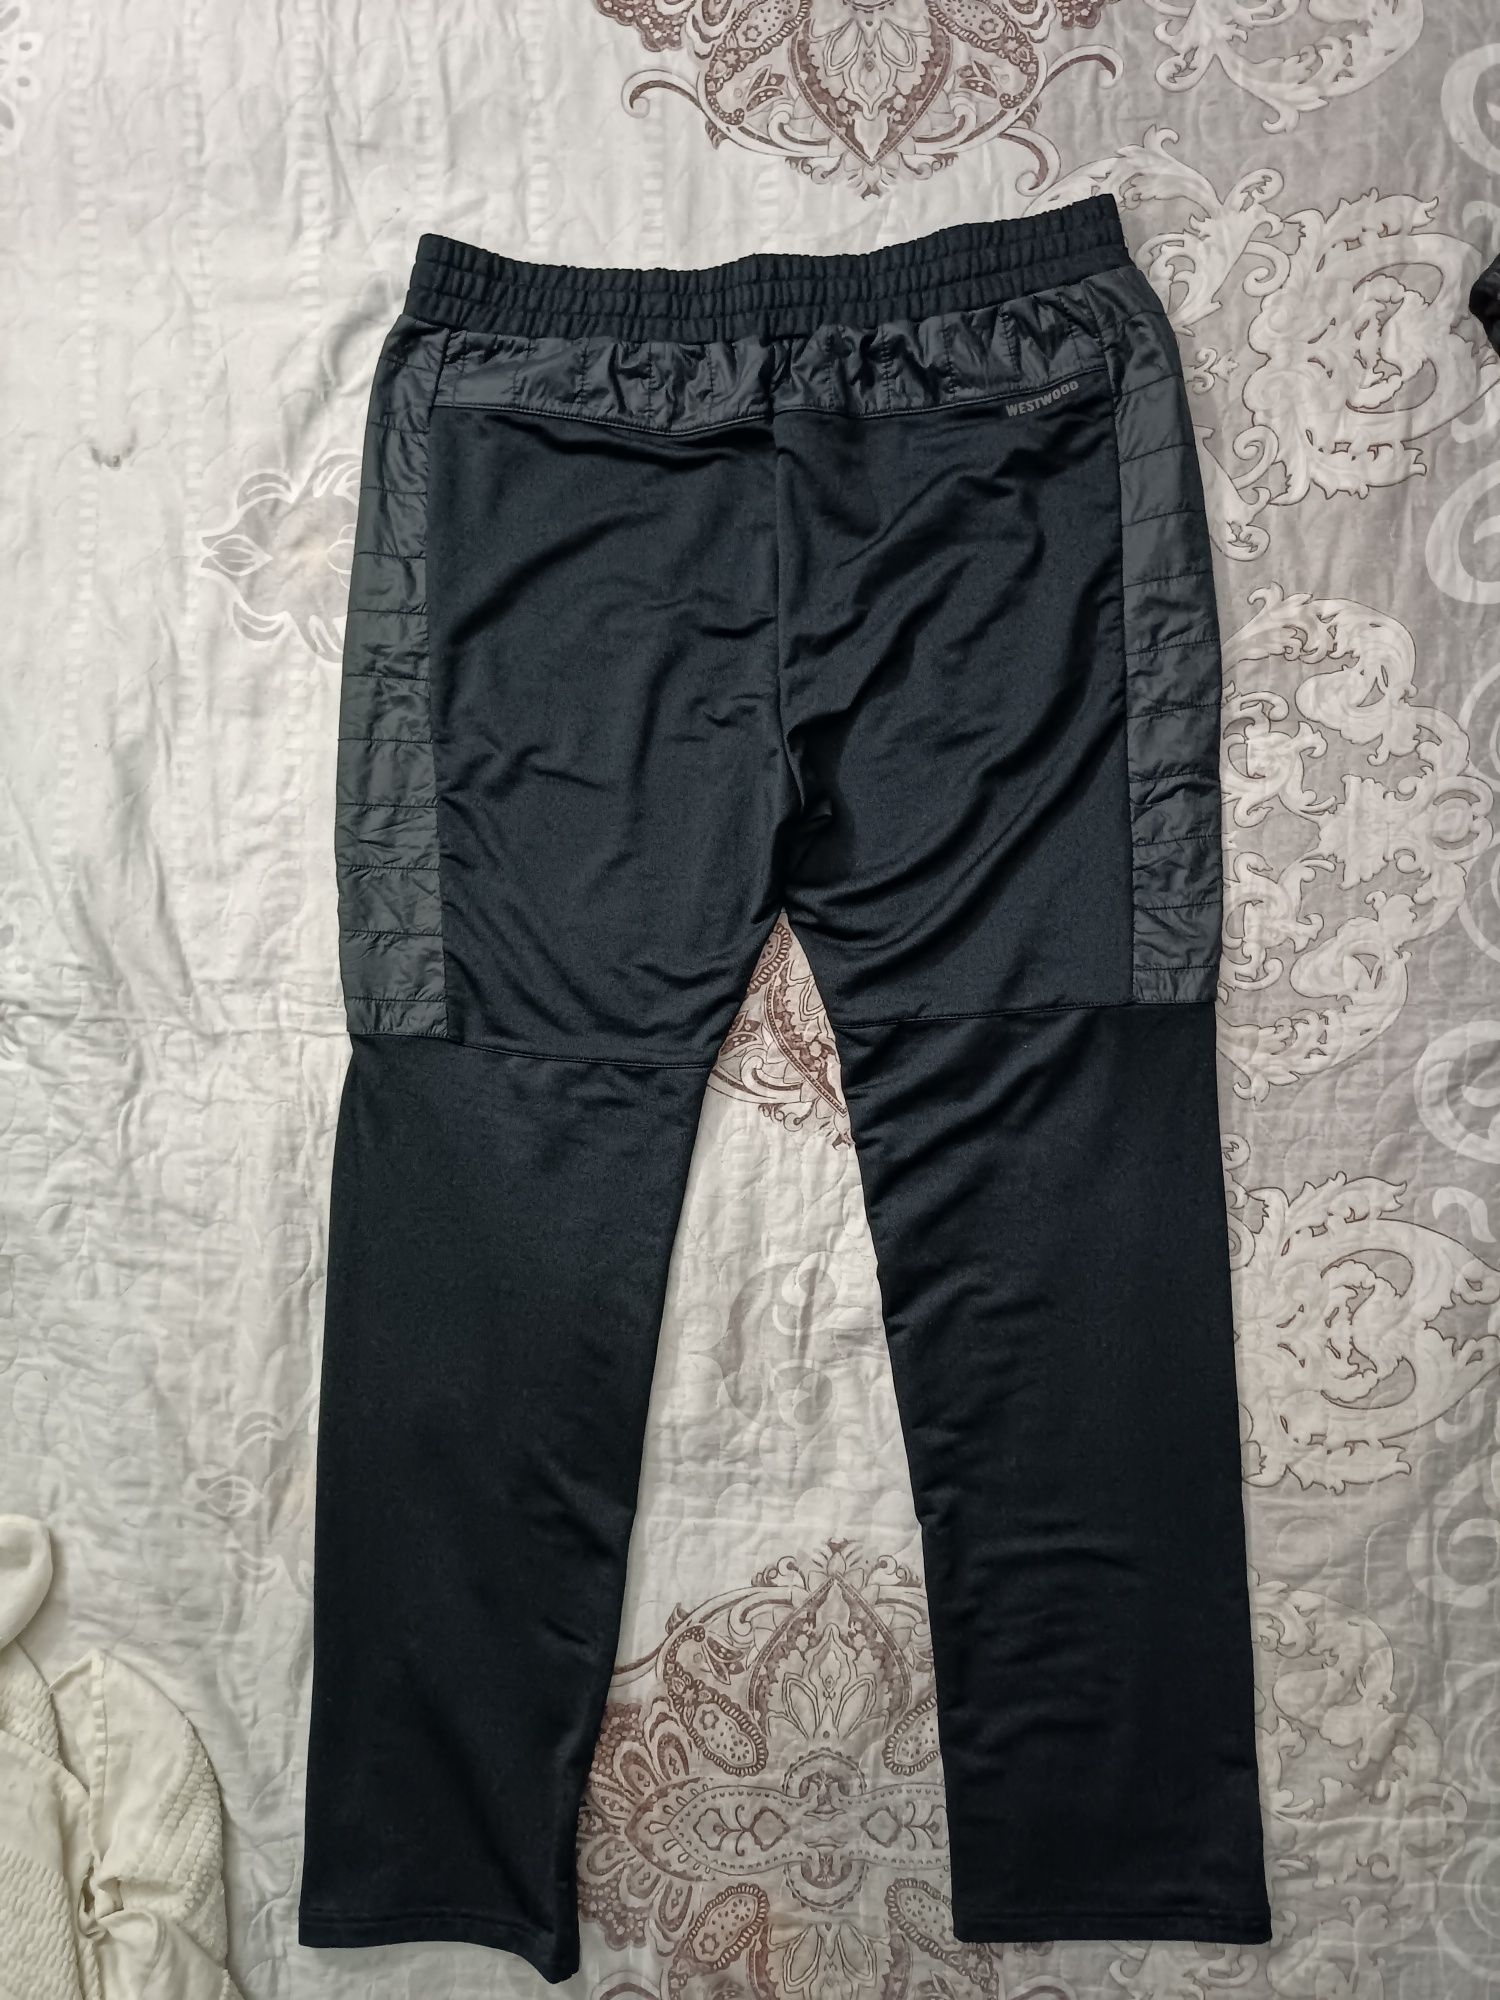 Оригинальные штаны производства Корея